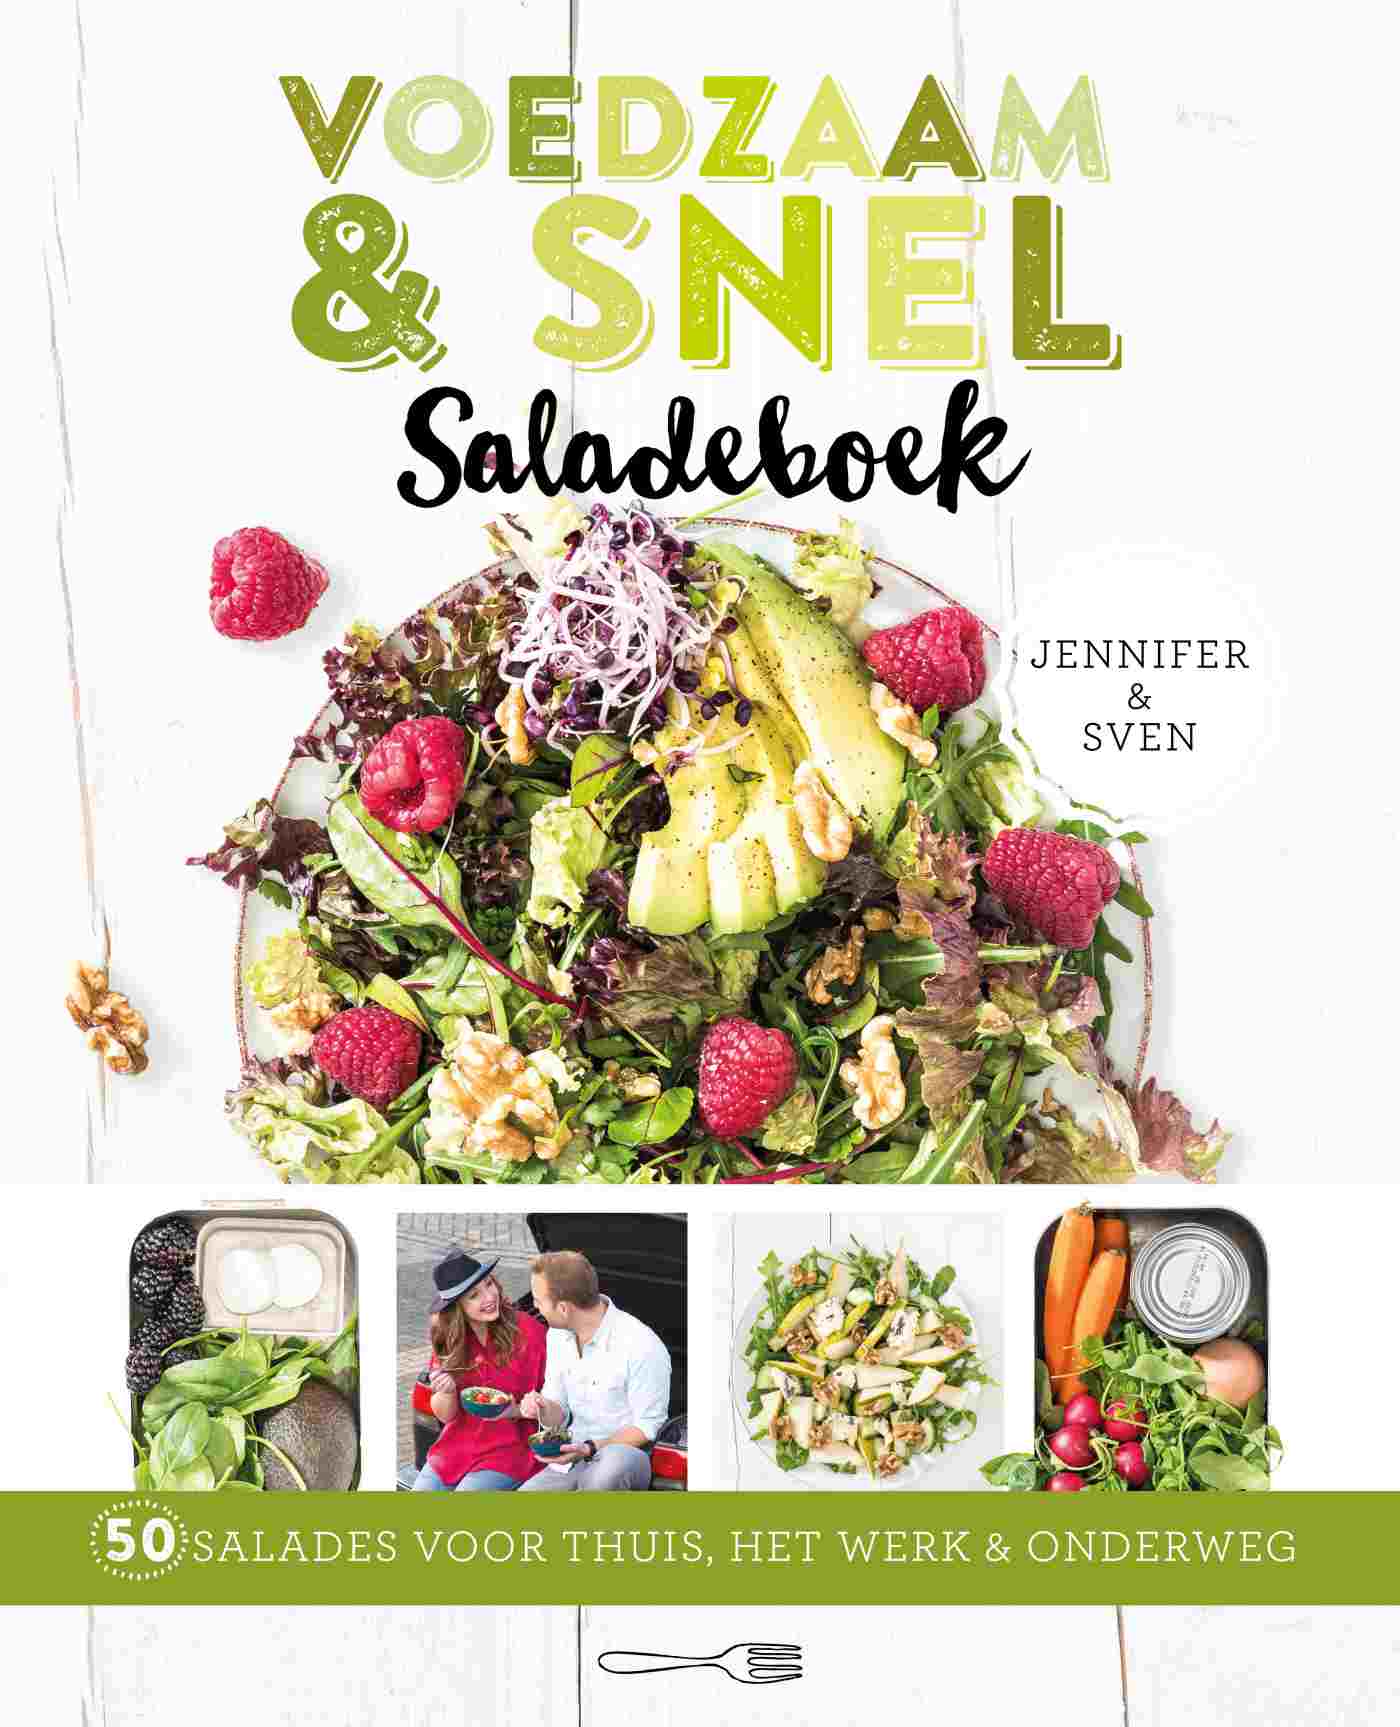 Voedzaam & snel saladeboek (Ebook)